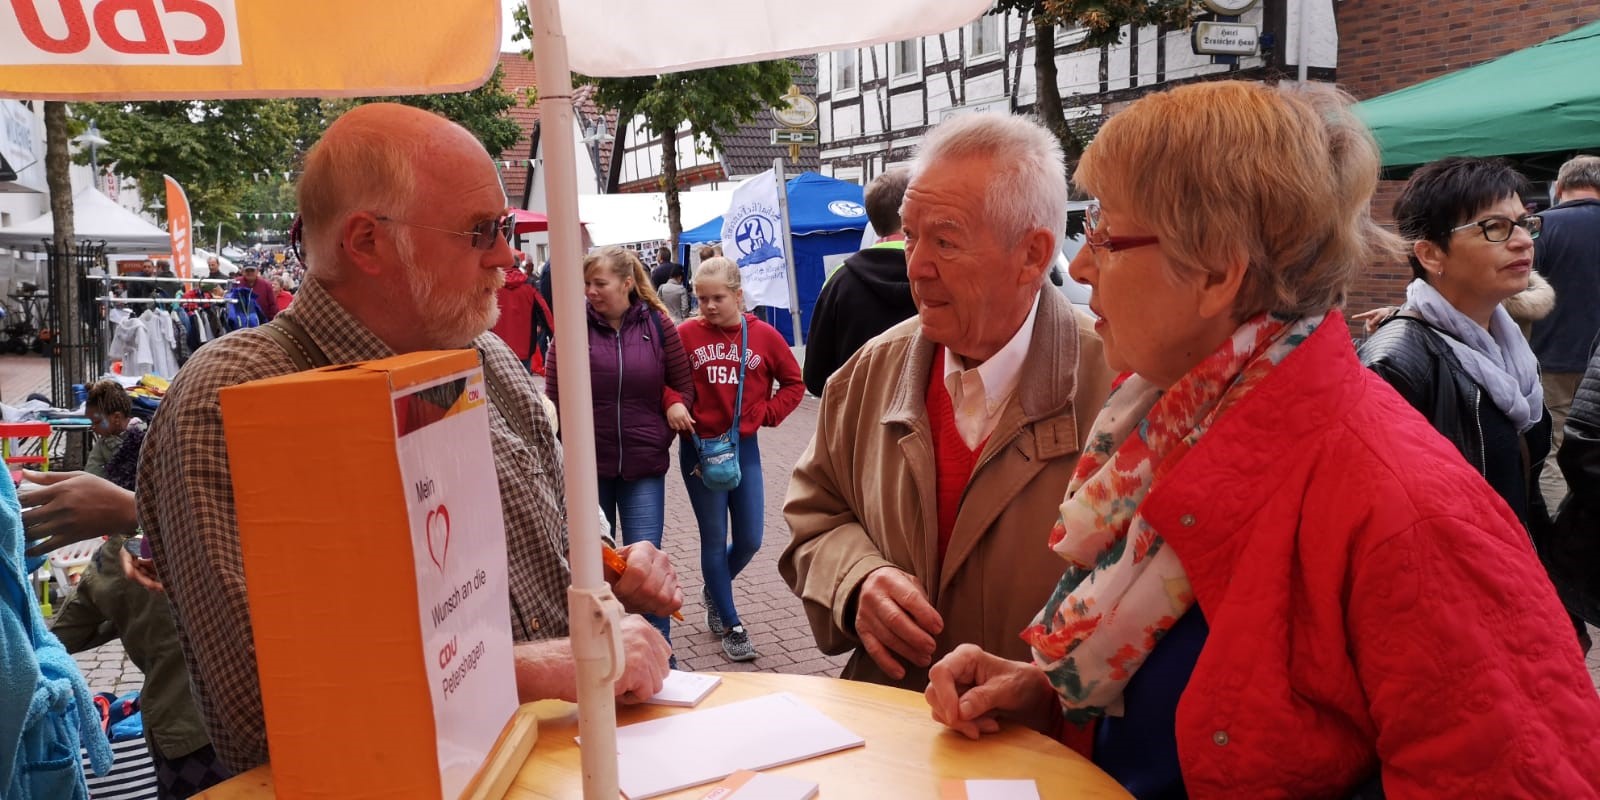 12.92.2019 - CDU - Stand auf dem Altstadtfest Petershagen 2019 - 